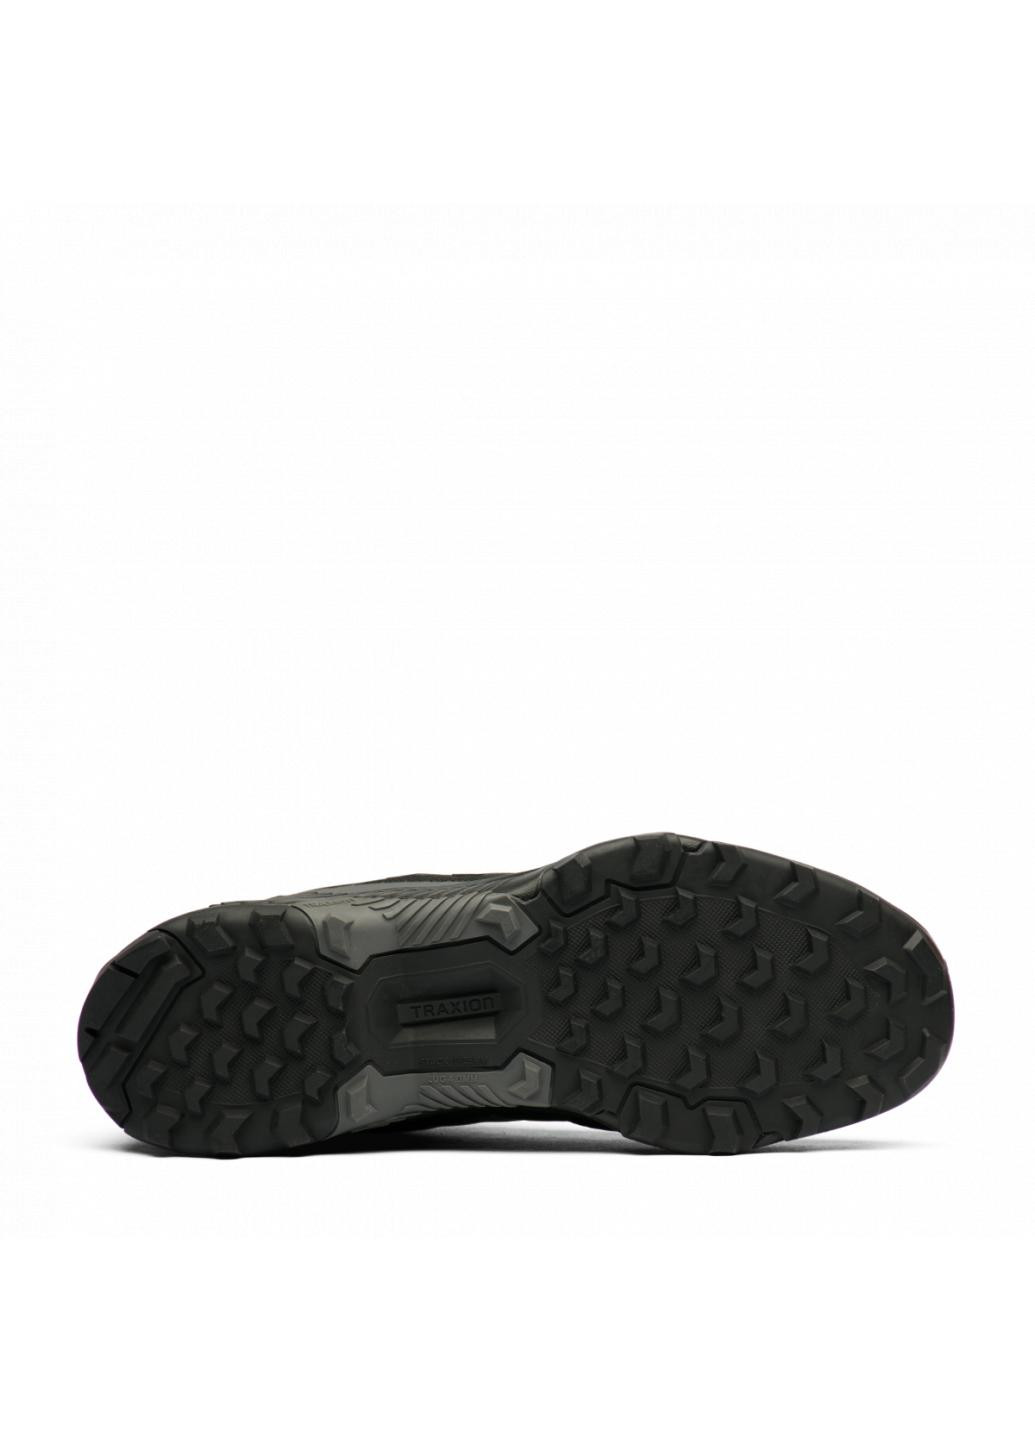 Черные зимние кроссовки eastrail 2 s24010 adidas